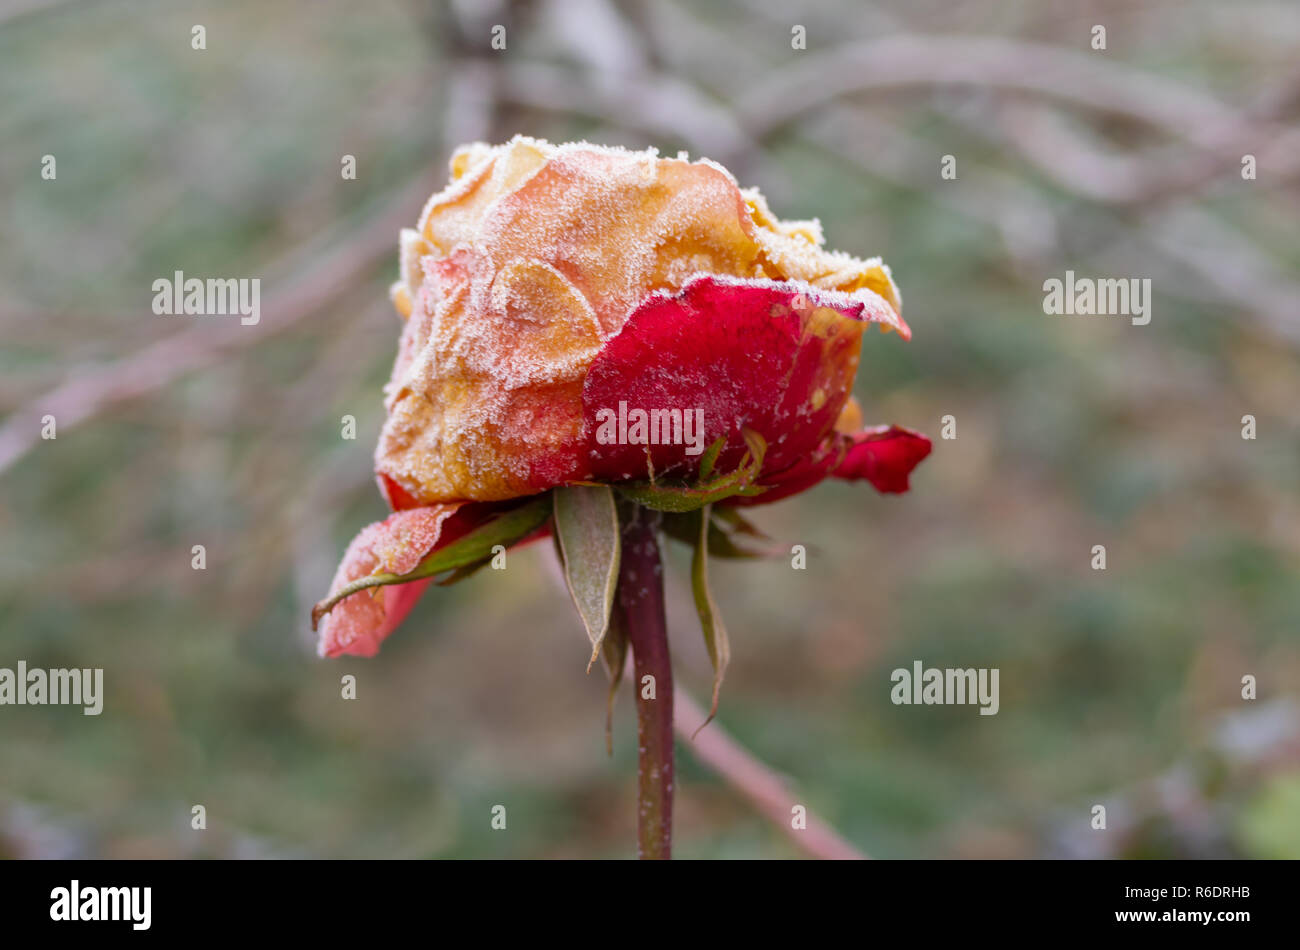 Einsame schöne Rose unter der ersten frost Angriff im herbstlichen Garten Stockfoto